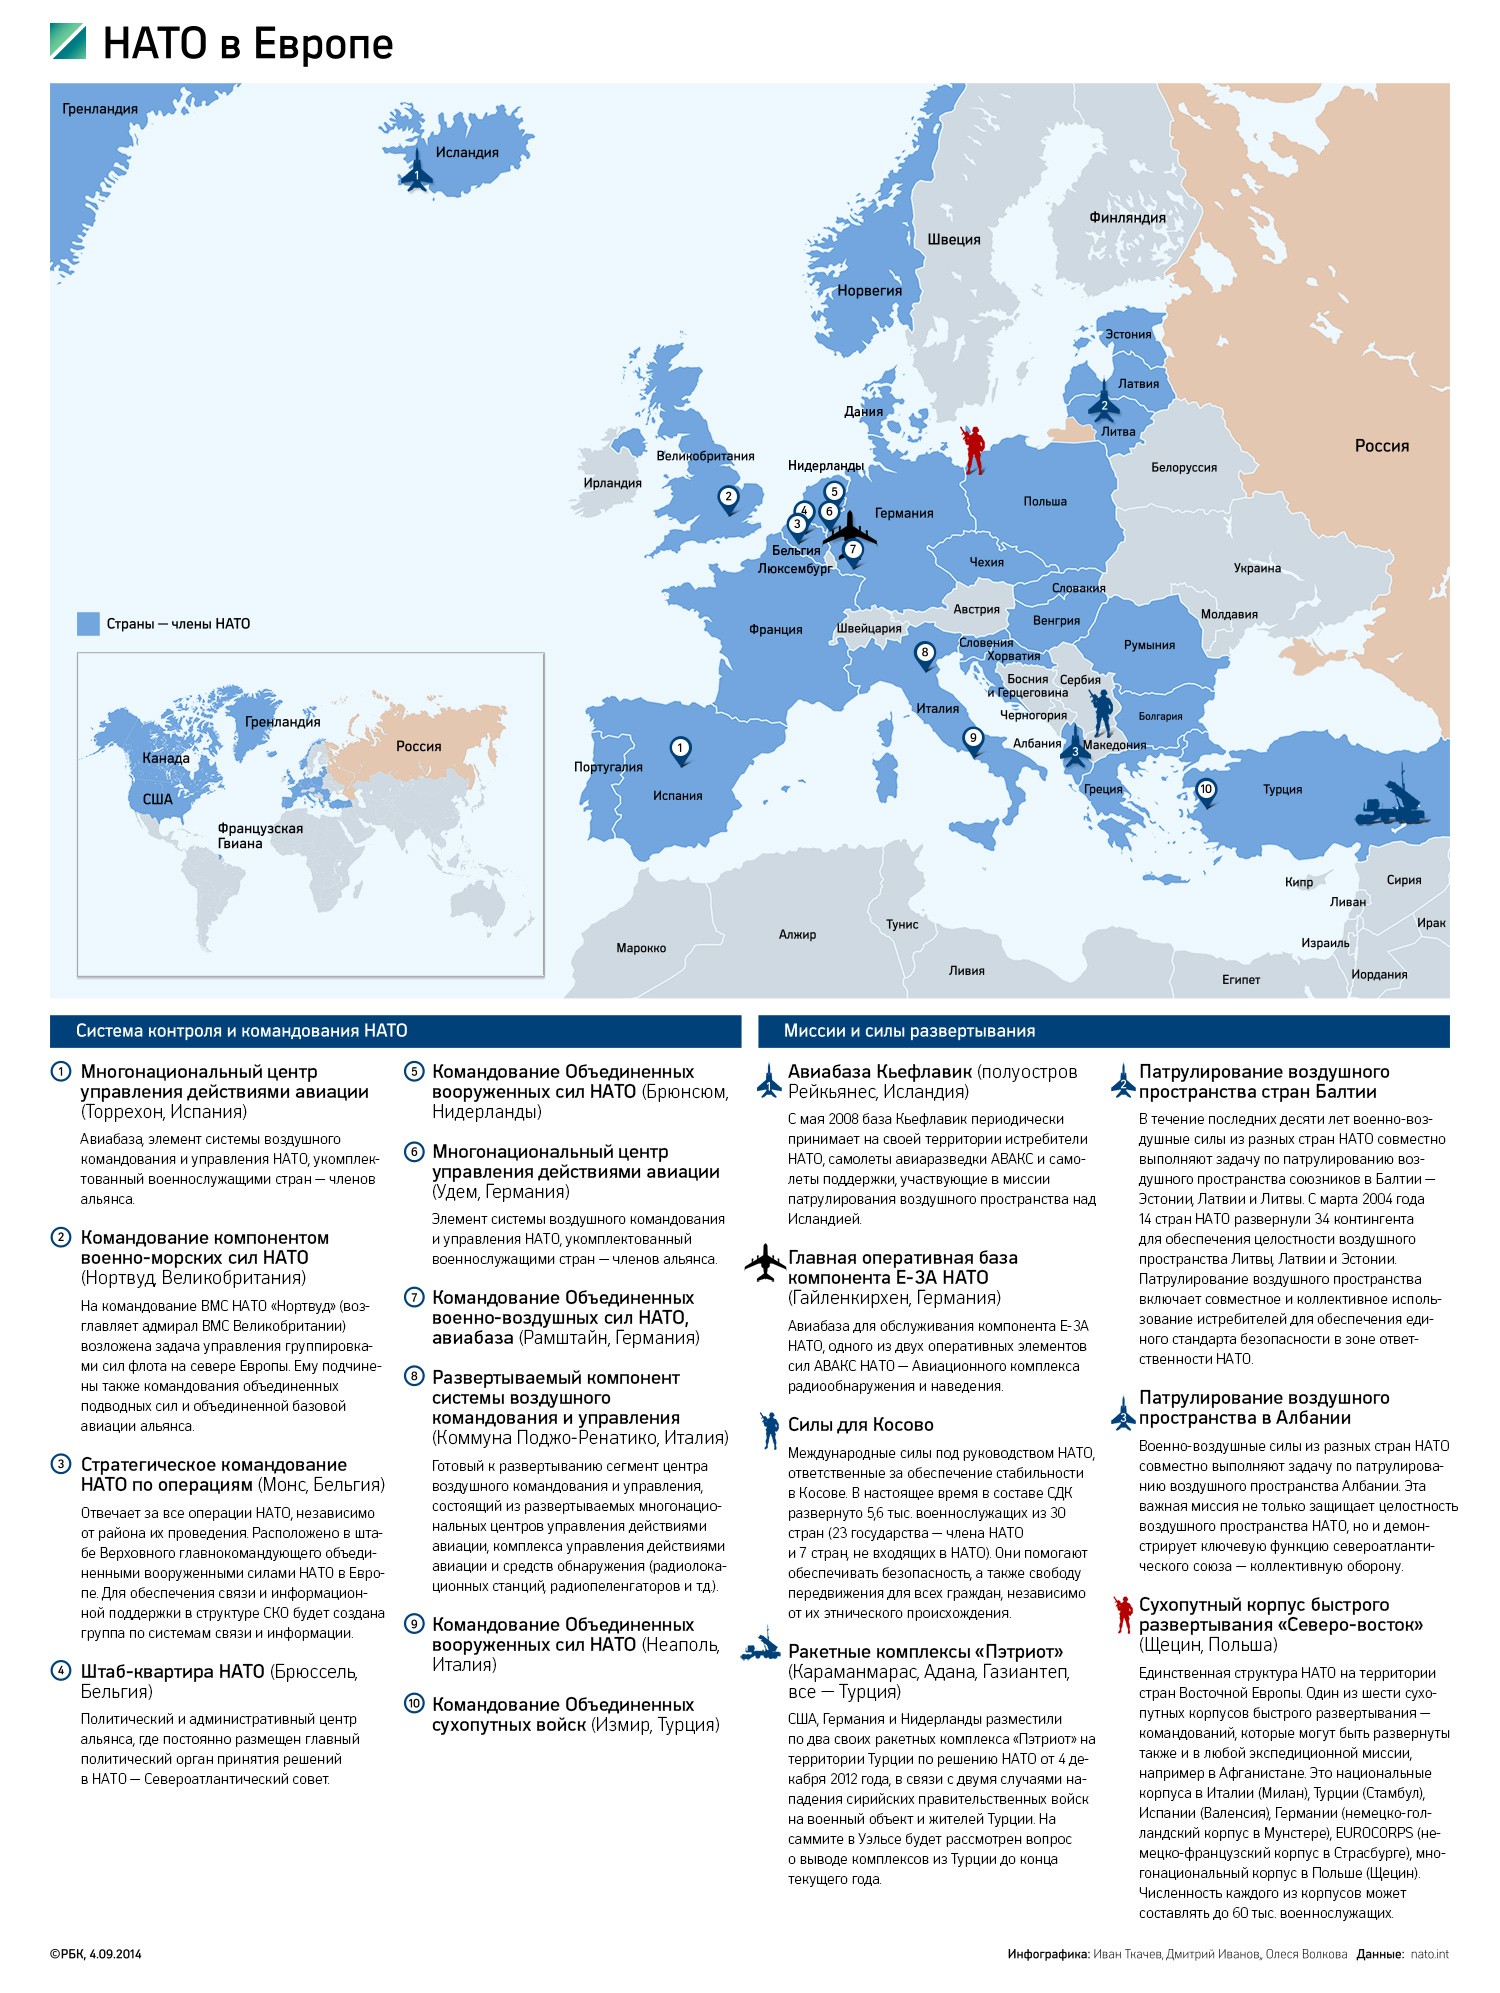 НАТО увеличит масштабы маневров в балтийском регионе